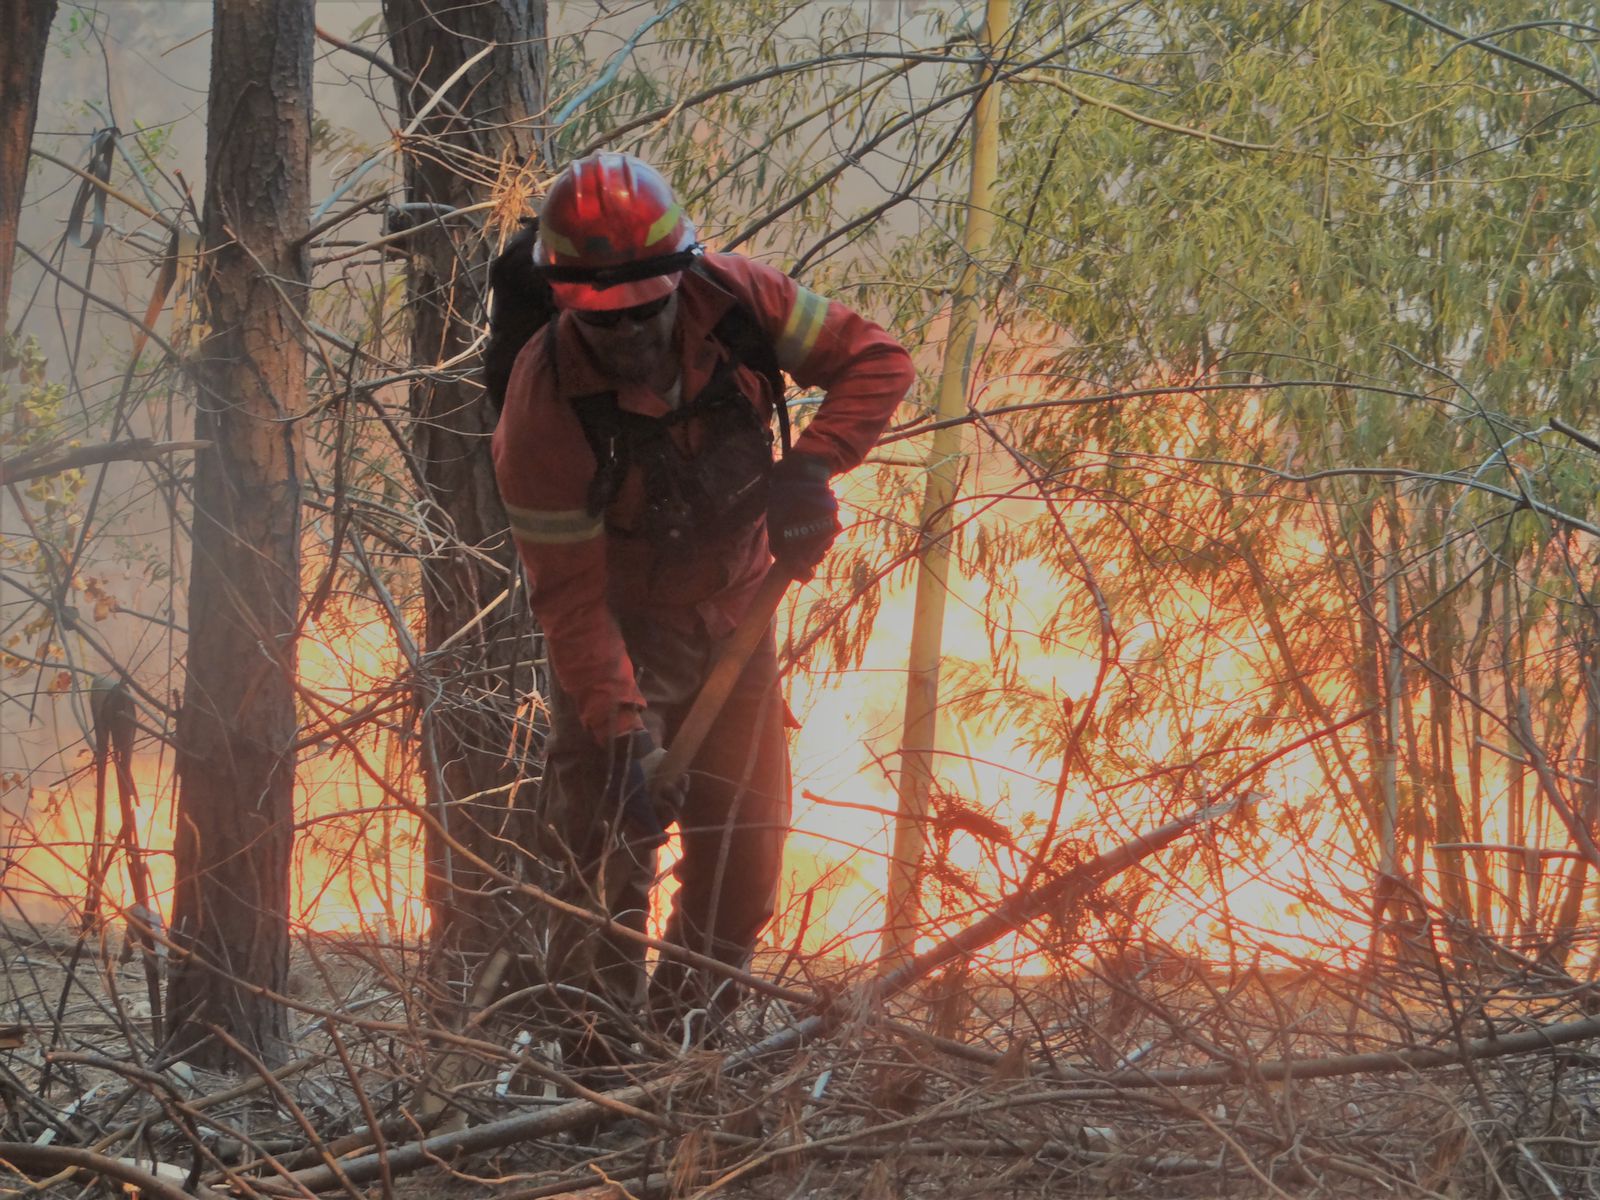 Decretan alerta temprana preventiva en provincias de Valparaíso, Marga Marga y San Felipe por amenaza de incendios forestales